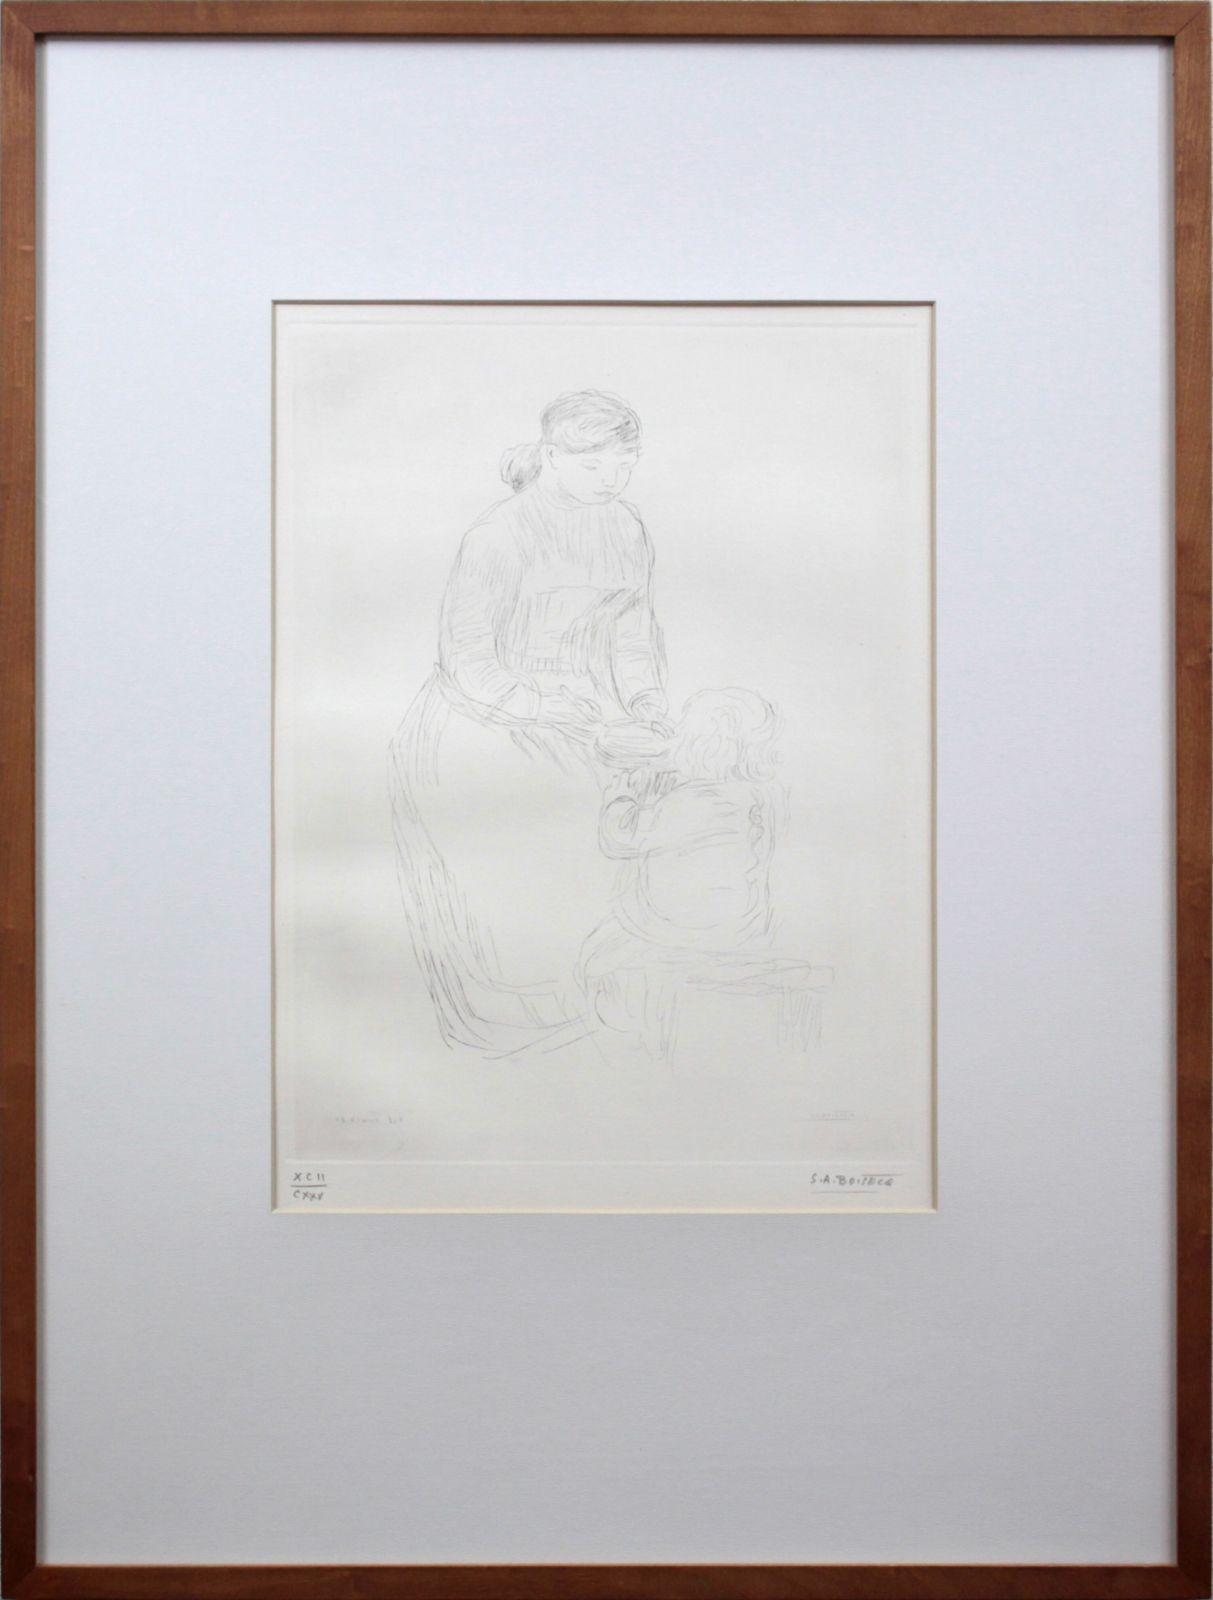 SHIN】ルノワール「身体を拭く裸婦」銅版画（アルベール・アンドレ 